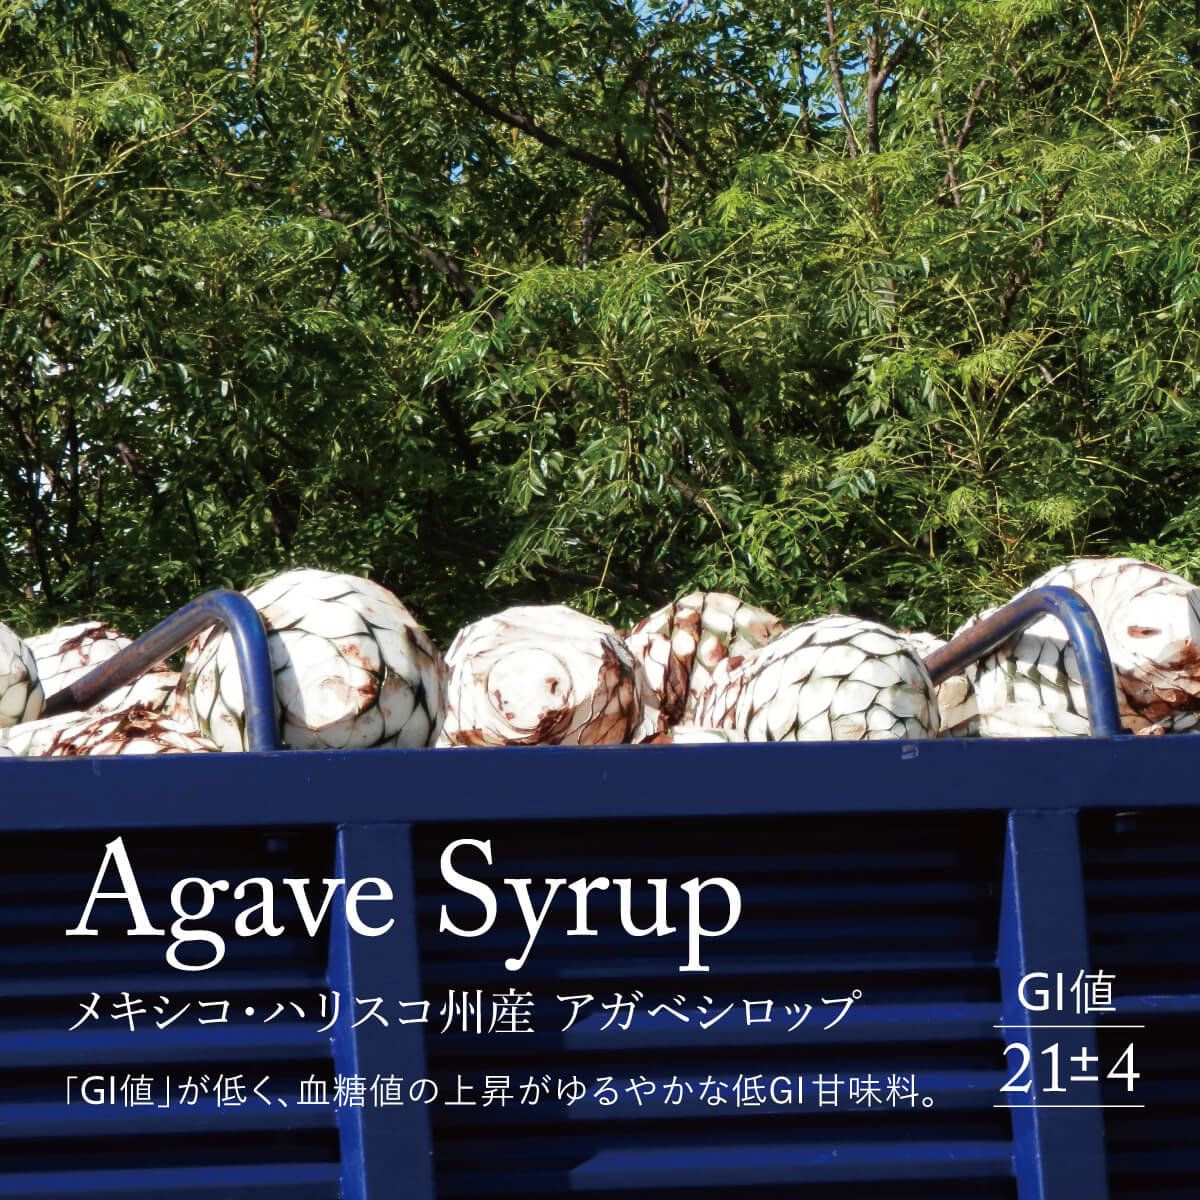 Agave Syrup メキシコ・ハリスコ州産 アガベシロップ。「GI値」が低く、血糖値の上昇がゆるやかな低GI甘味料。GI値 21±4